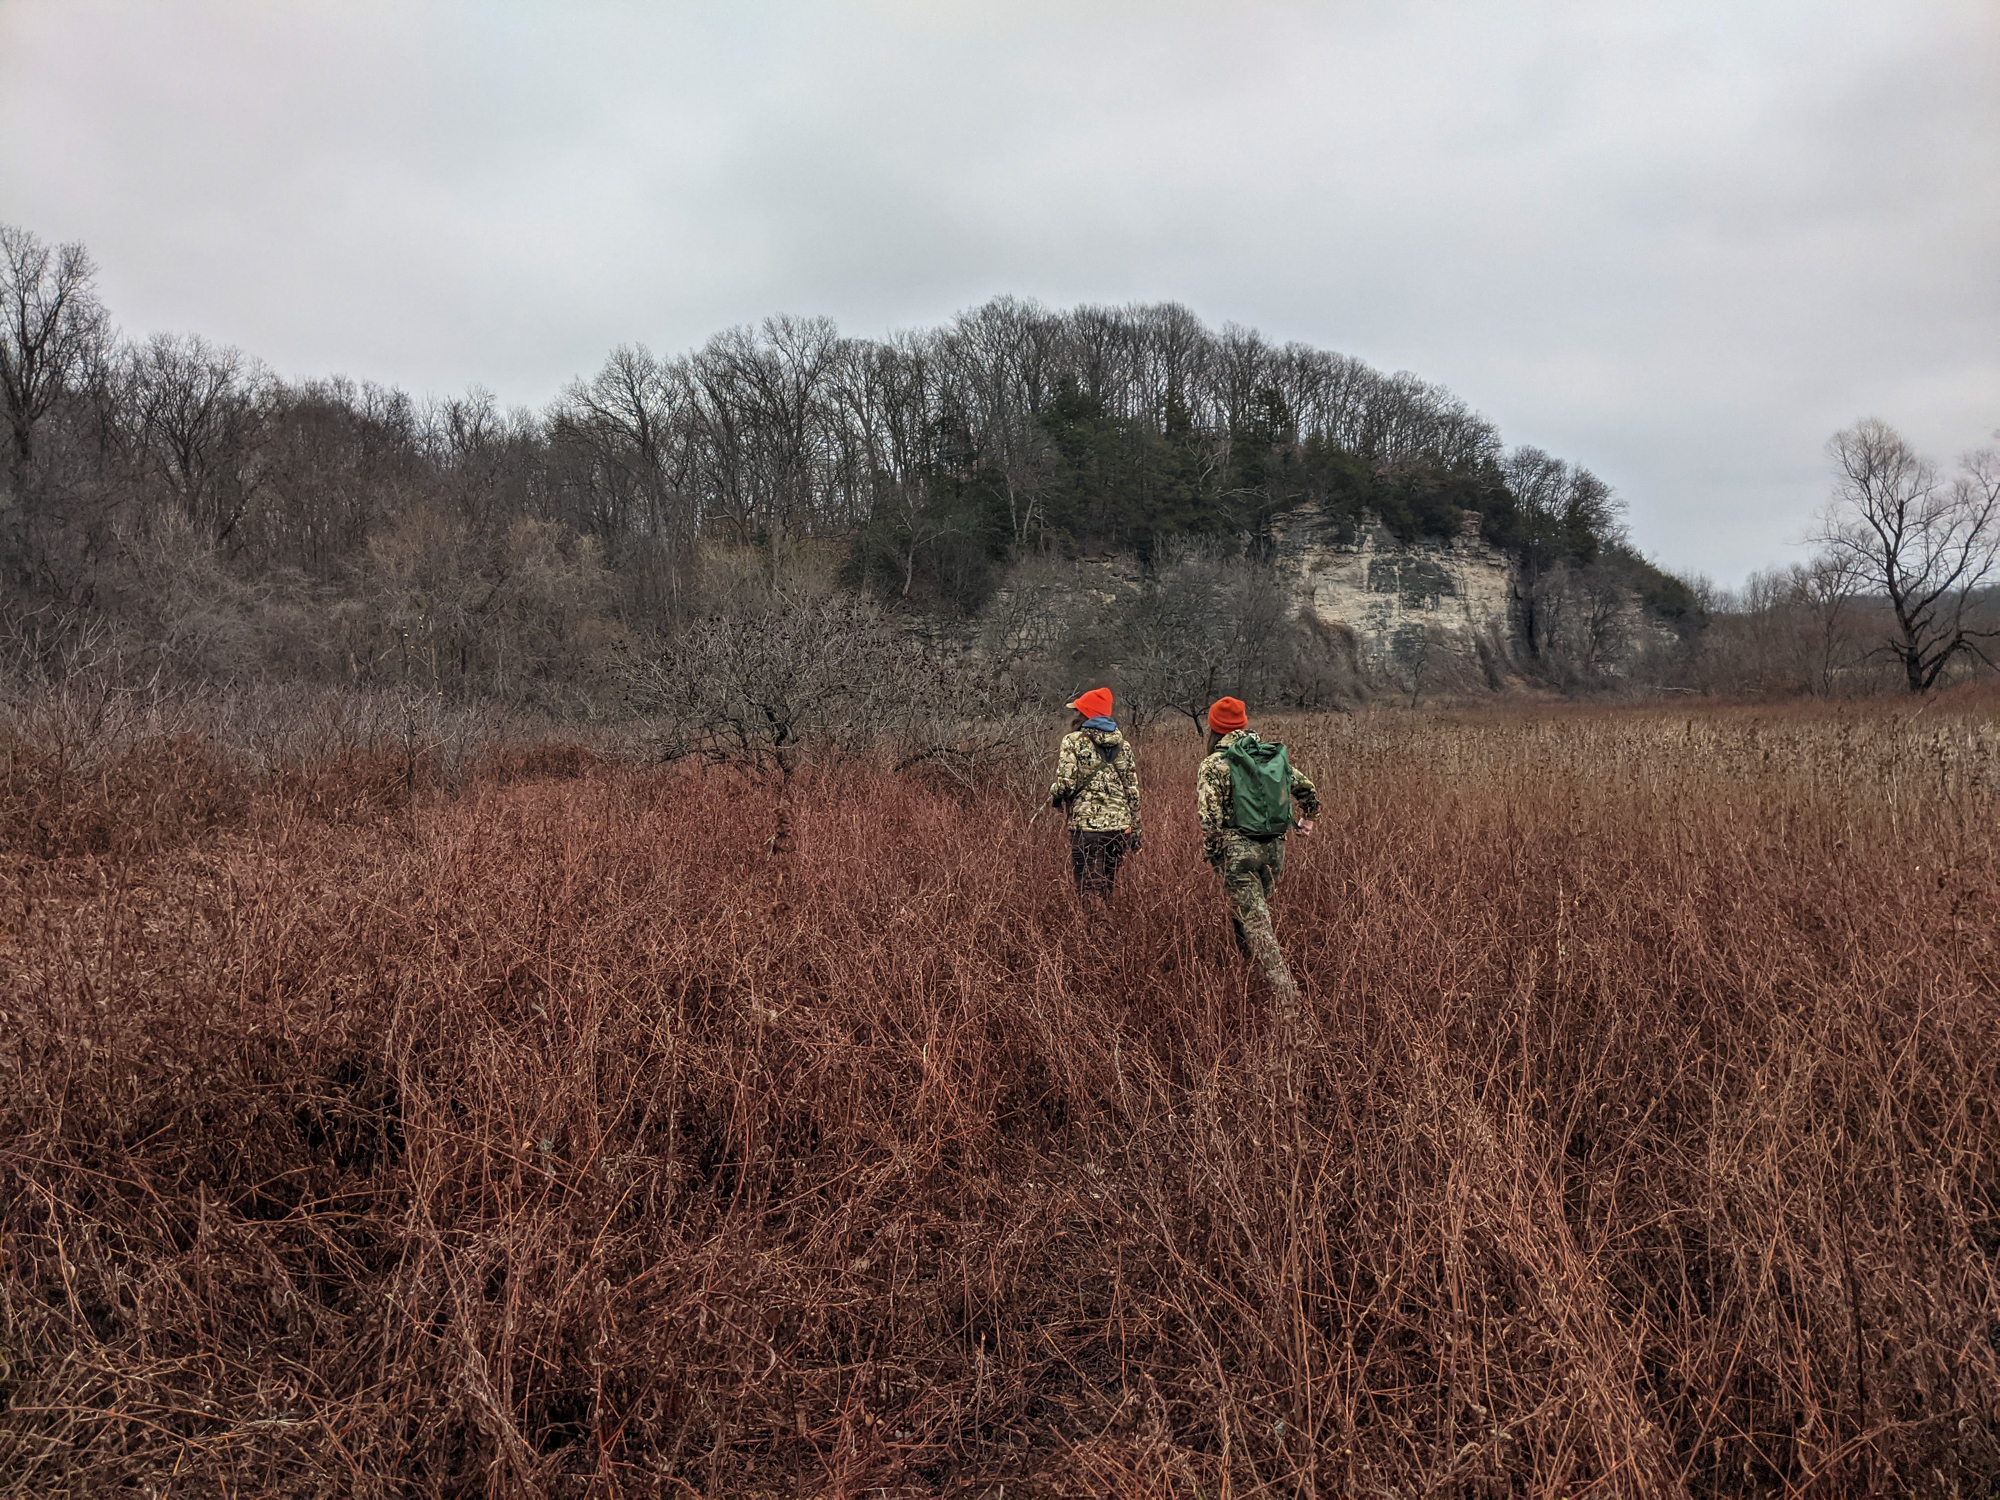 Two hunters in camo and blaze orange caps walk across a winter field.